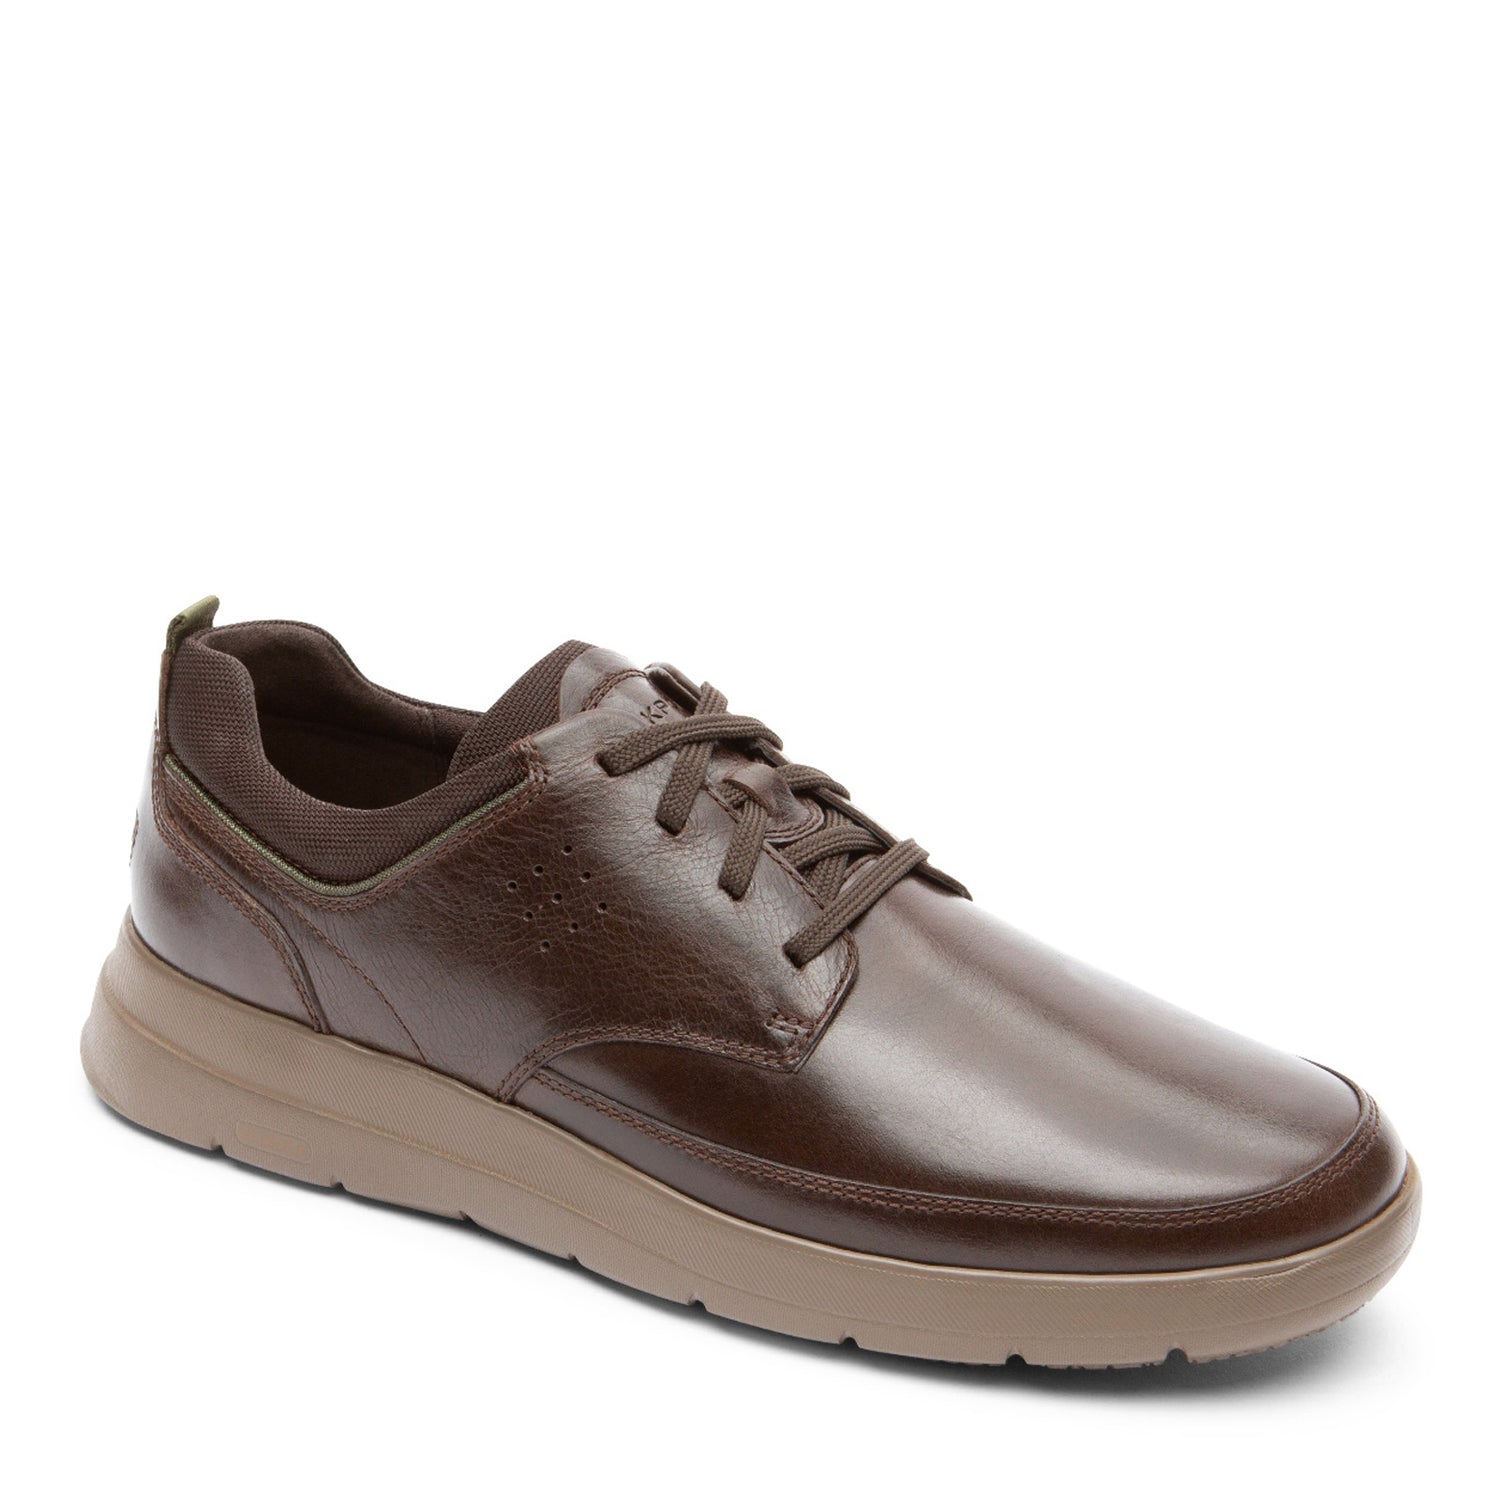 Peltz Shoes  Men's Rockport truFLEX Cayden Plain Toe Oxford JAVA CI9638